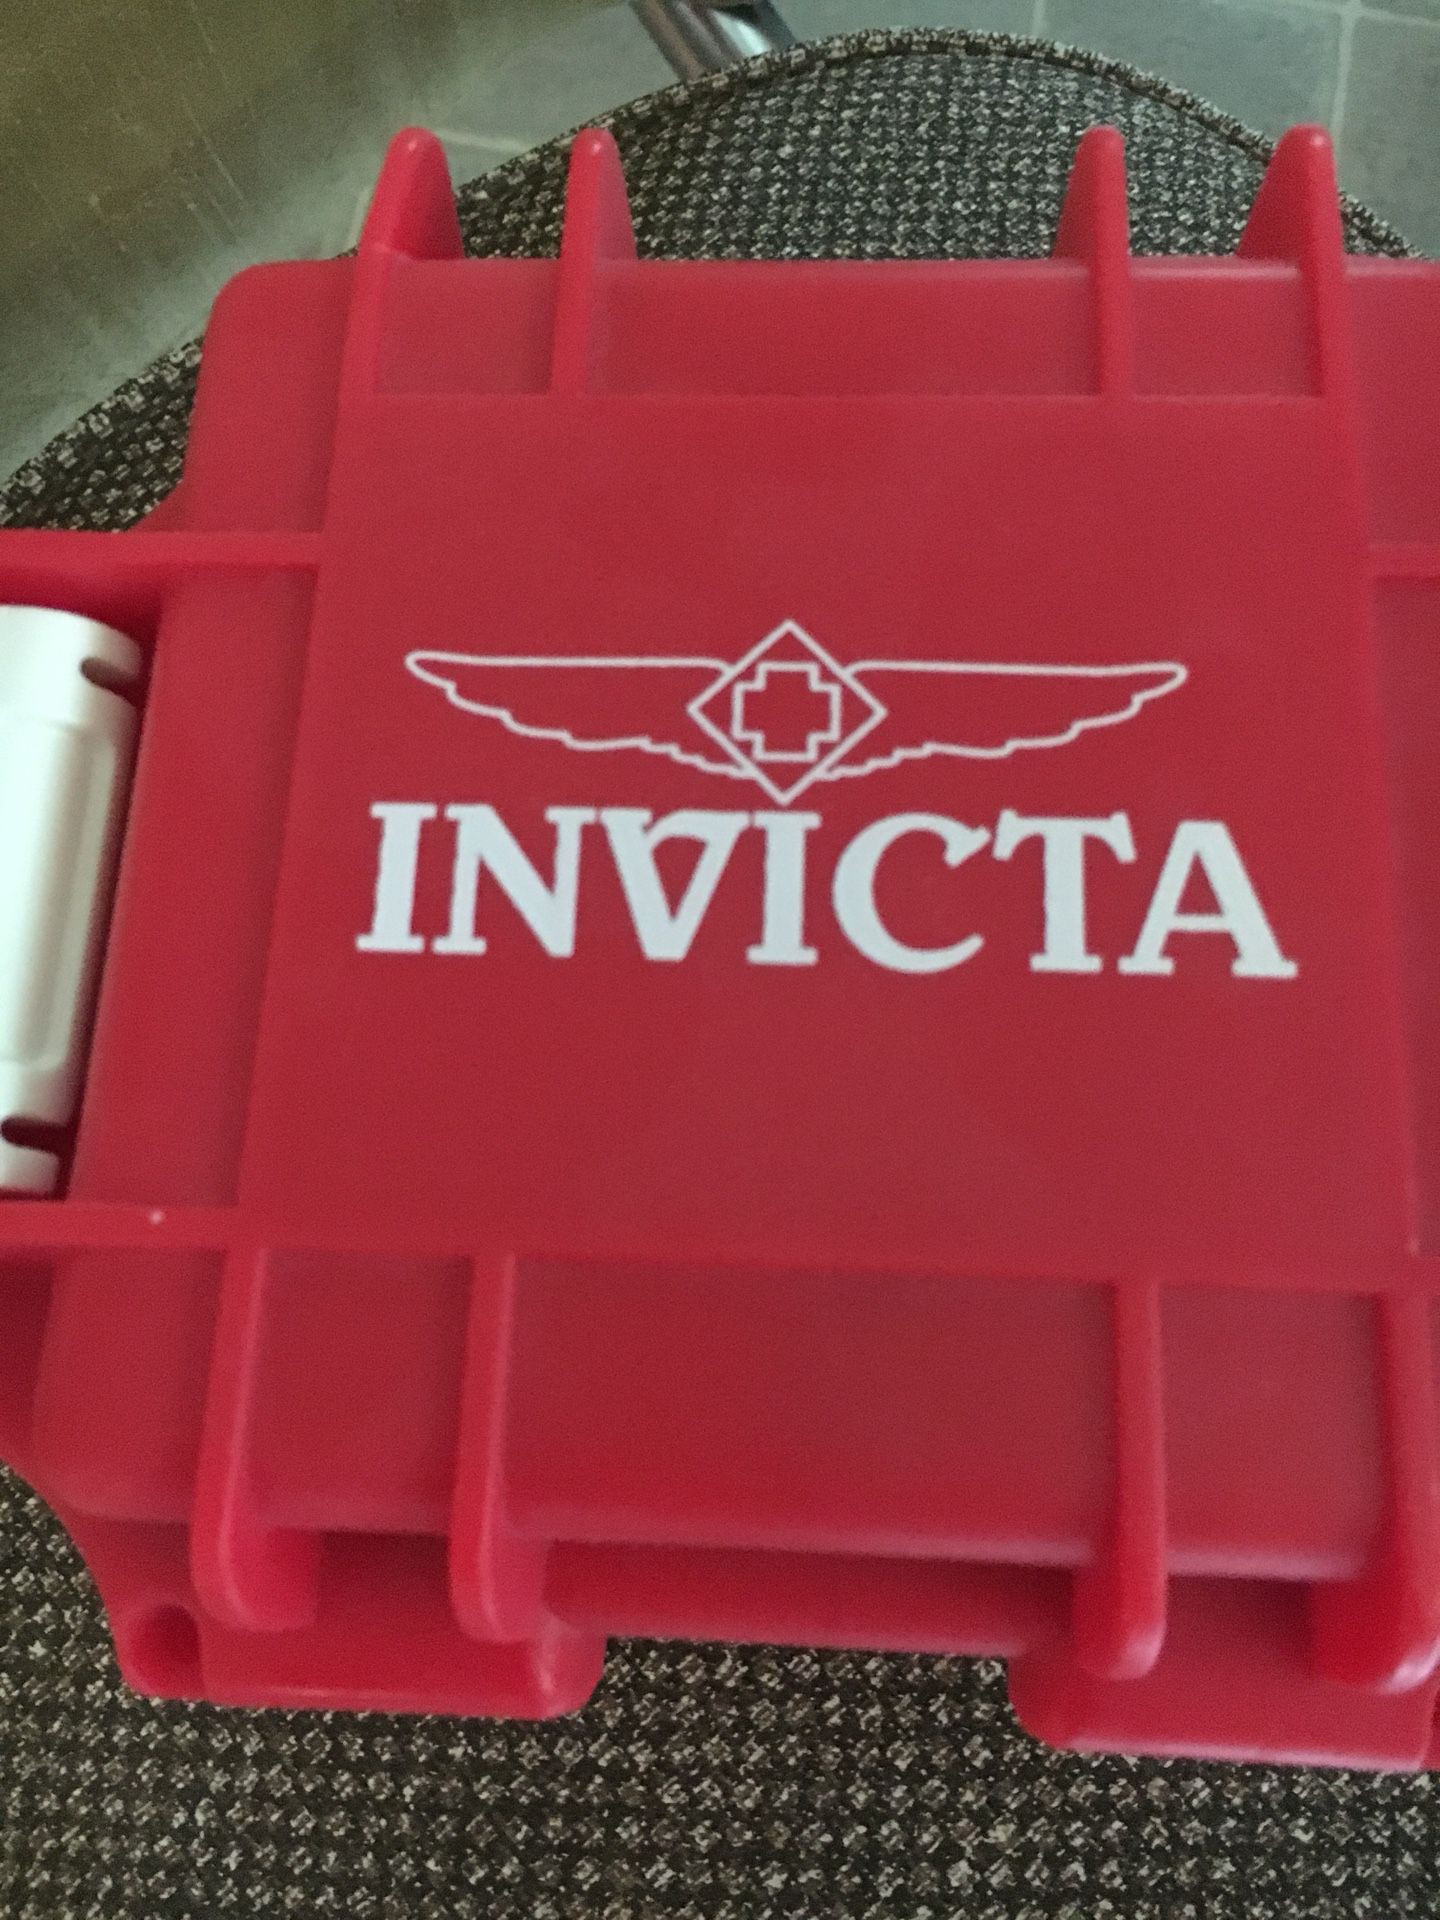 Invicta watch storage case